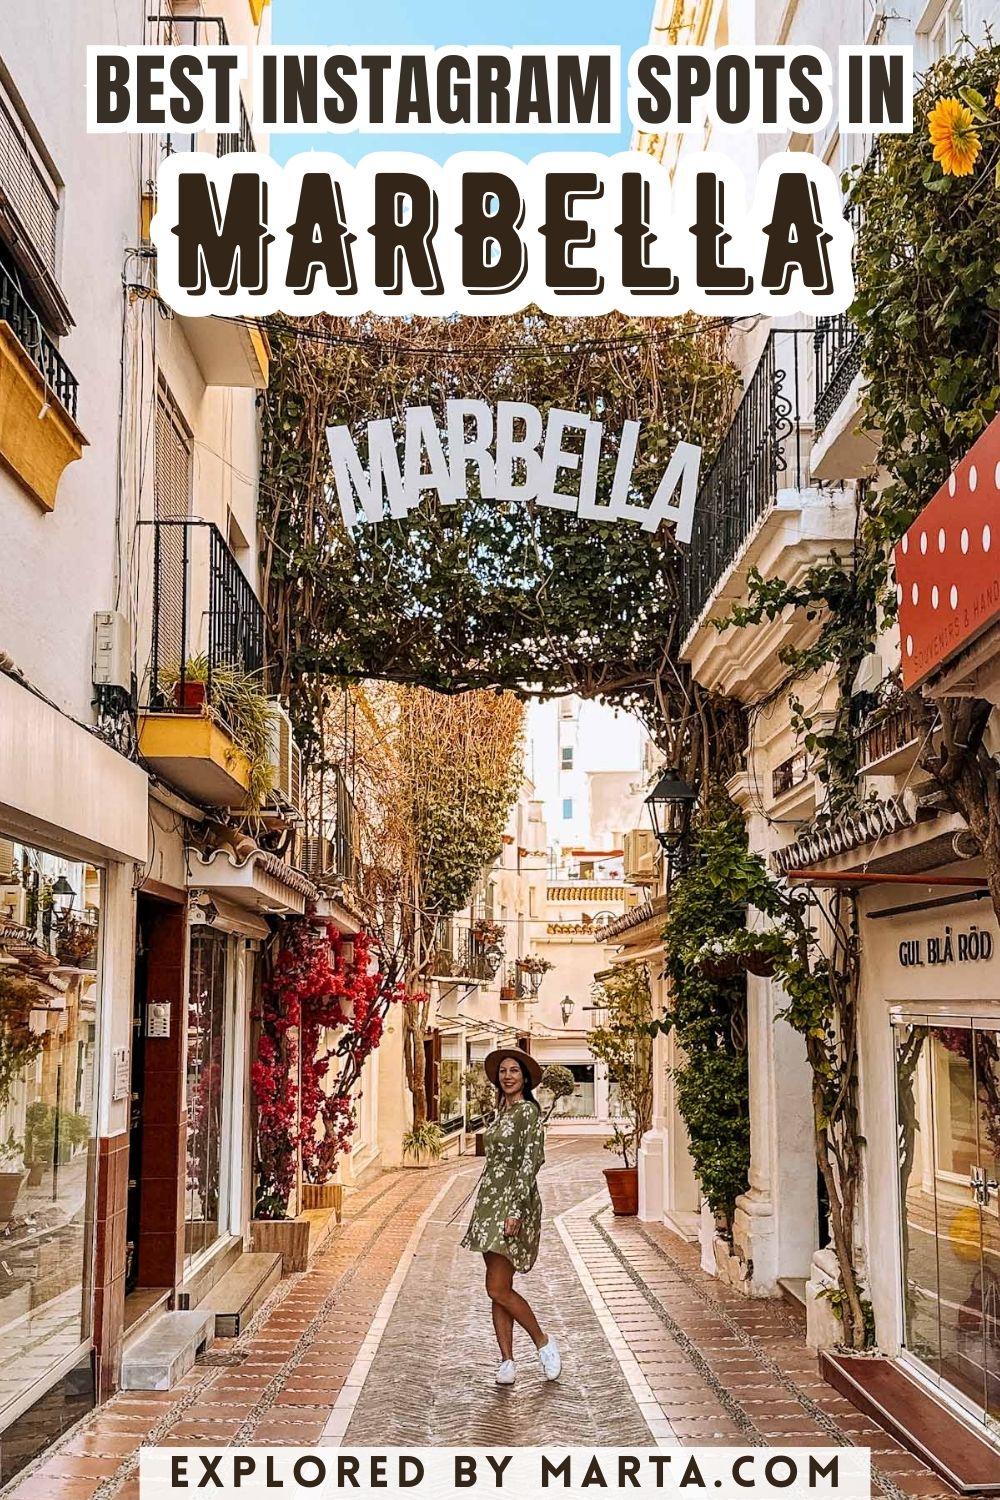 Amazing Instagram spots in Marbella, Spain